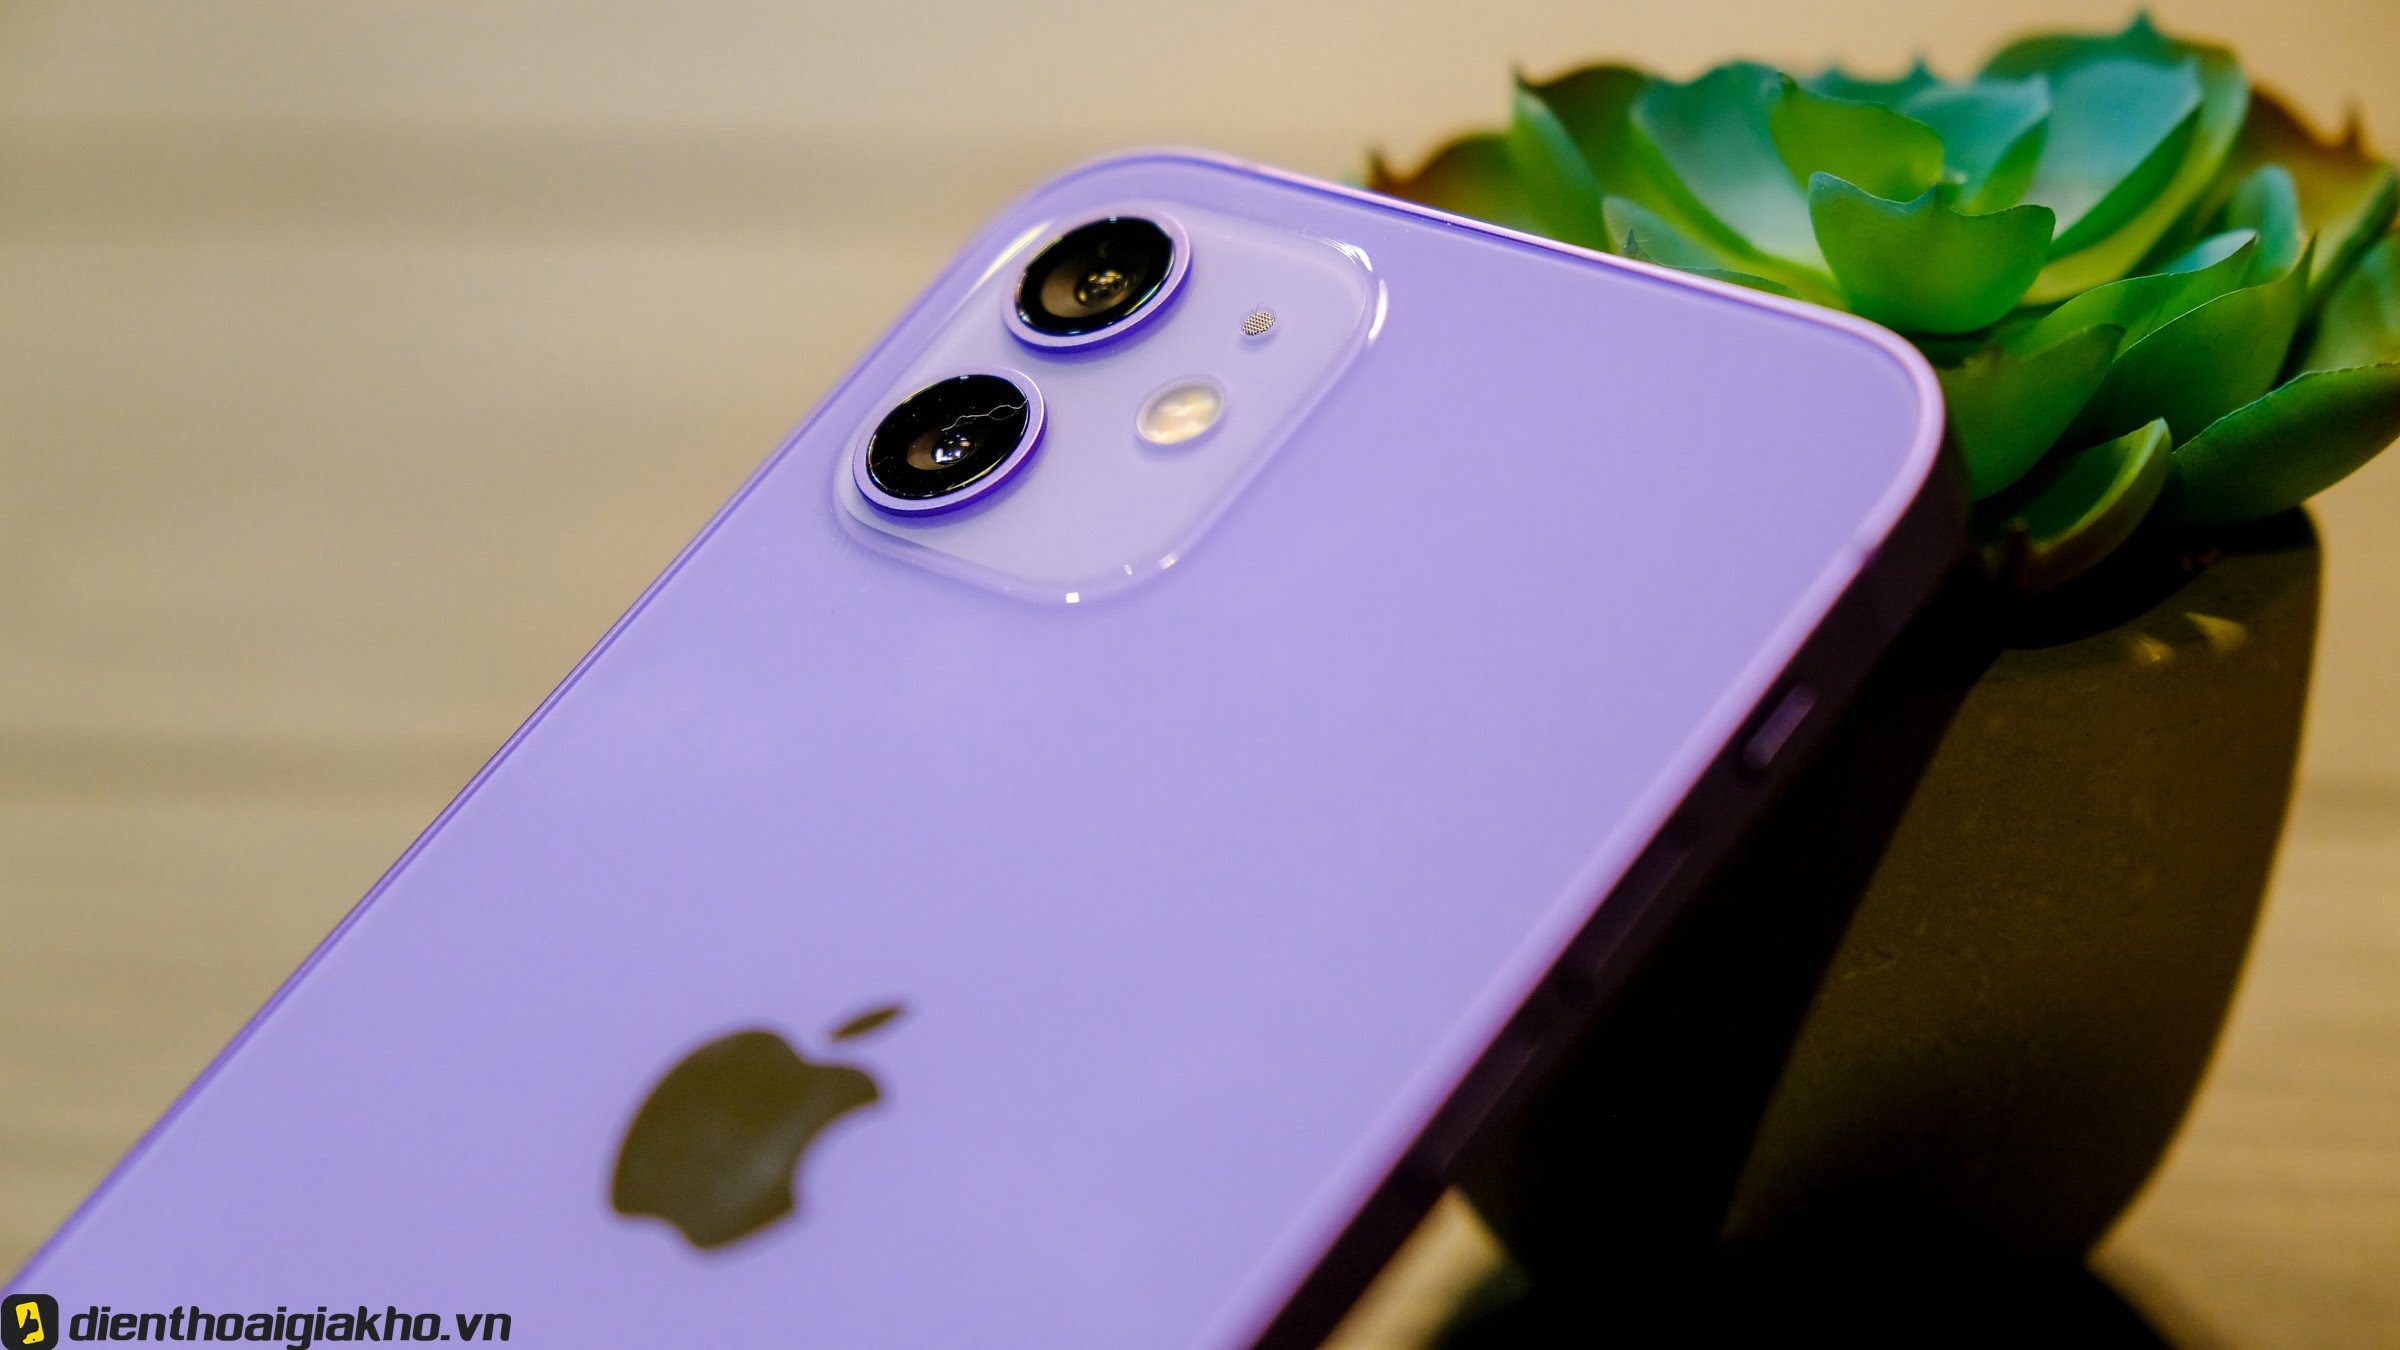 Sự làm mới mình của Apple để tạo ra hiệu ứng với thị trường với sắc tím ở mặt sau iphone 12 màu tím đầy tinh tế và sang trọng